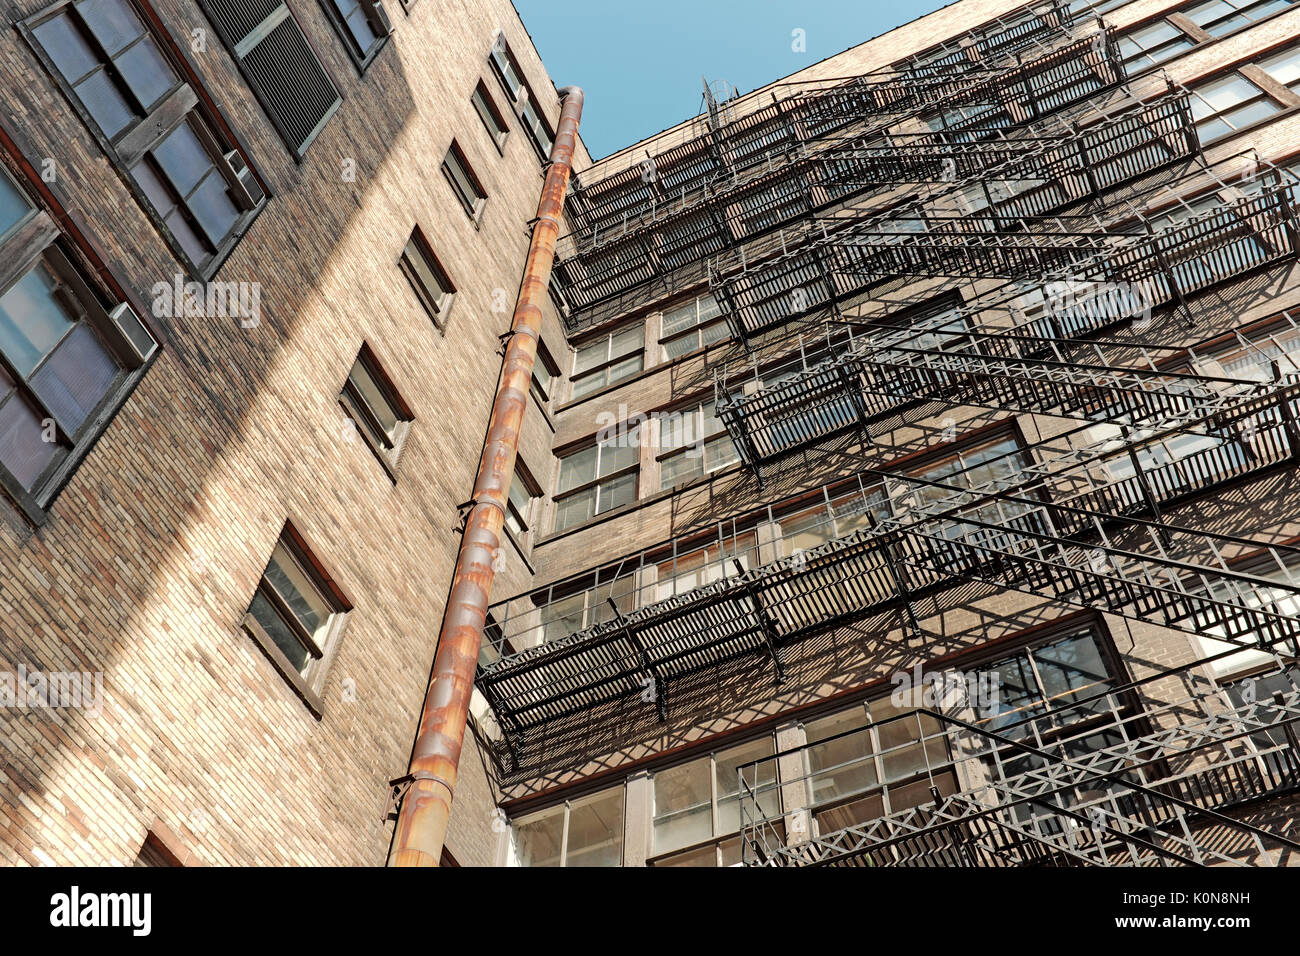 Externe Fire escape steel Treppen/Plattformen auf die Fassade eines alten Bürogebäude in Cleveland, Ohio, USA befestigt Stockfoto